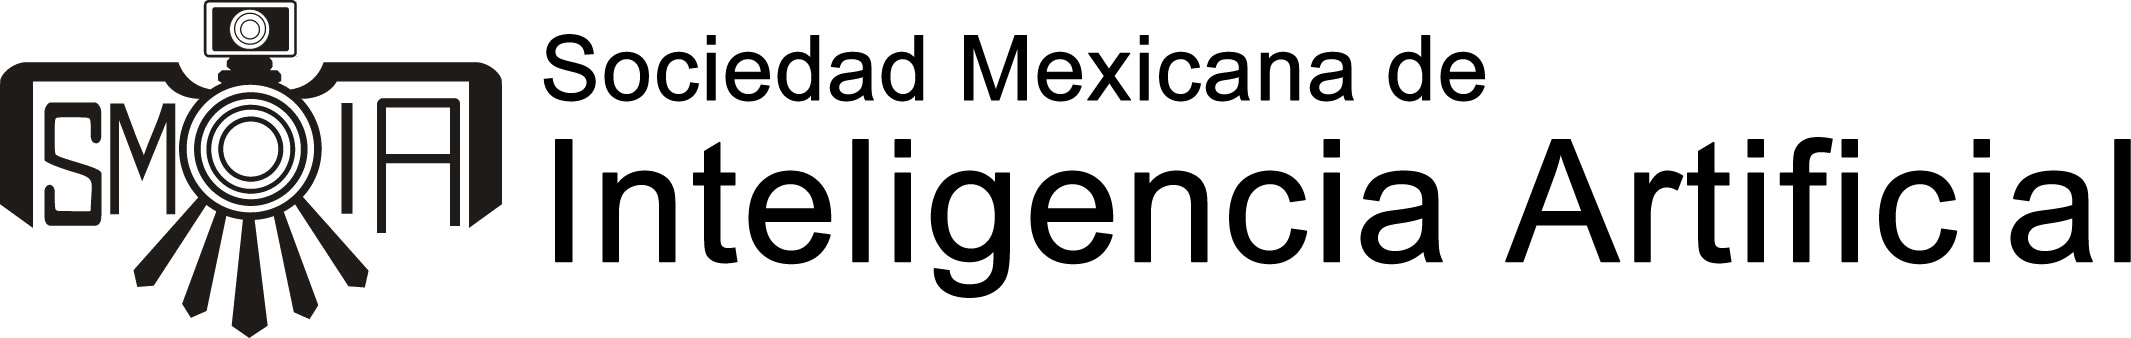 Sociedad Mexicana de Inteligencia Artificial